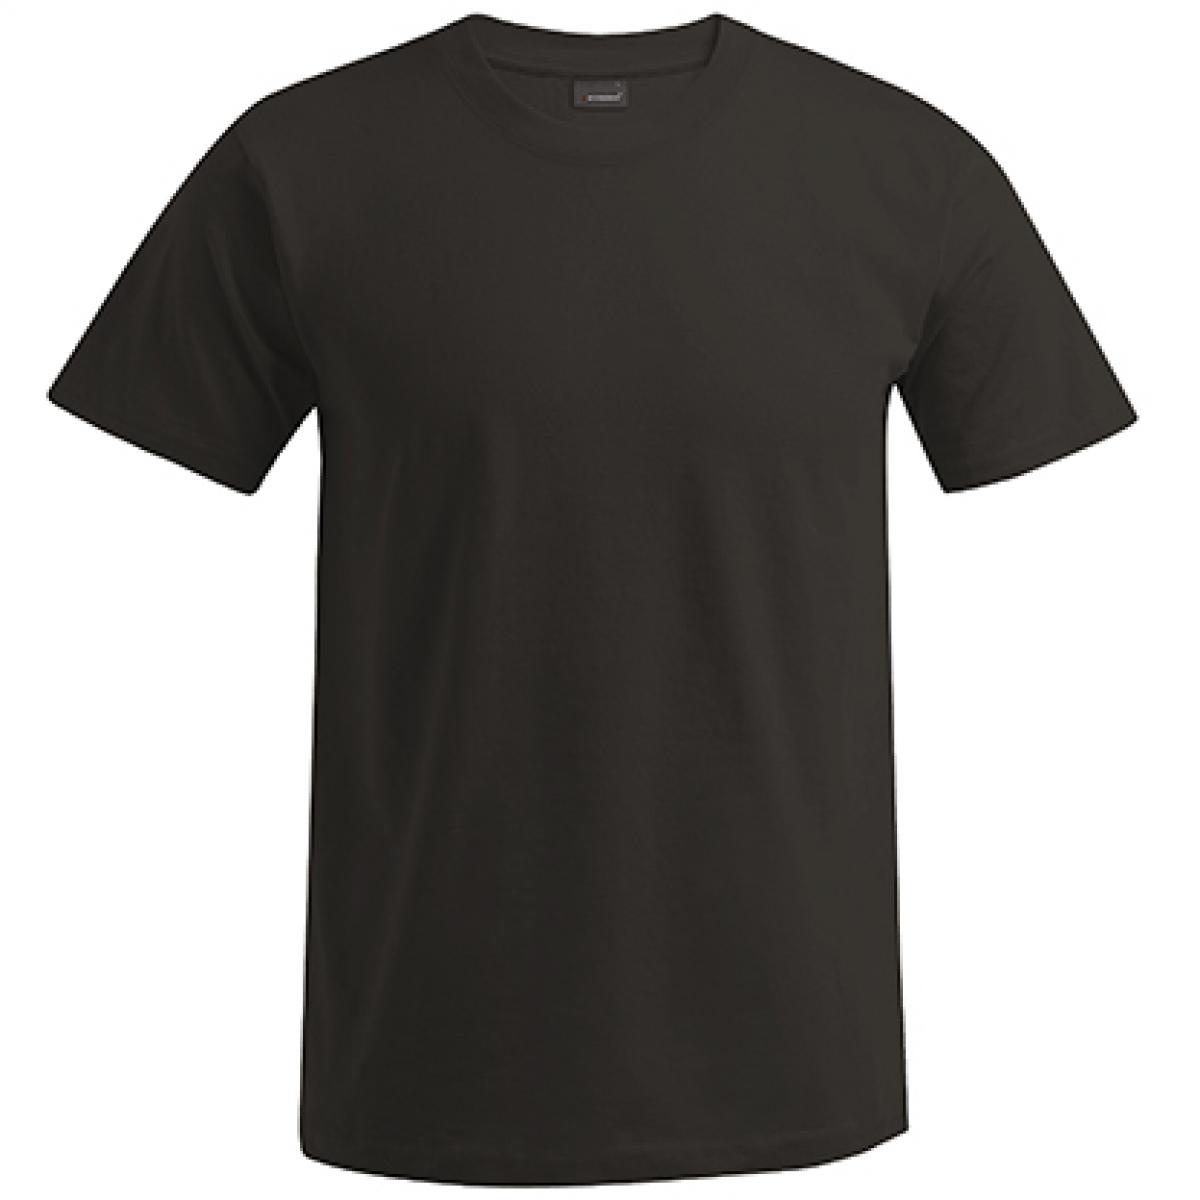 Hersteller: Promodoro Herstellernummer: 3000/3099 Artikelbezeichnung: Men´s Premium Herren T-Shirt - bis 5XL Farbe: Charcoal (Solid)